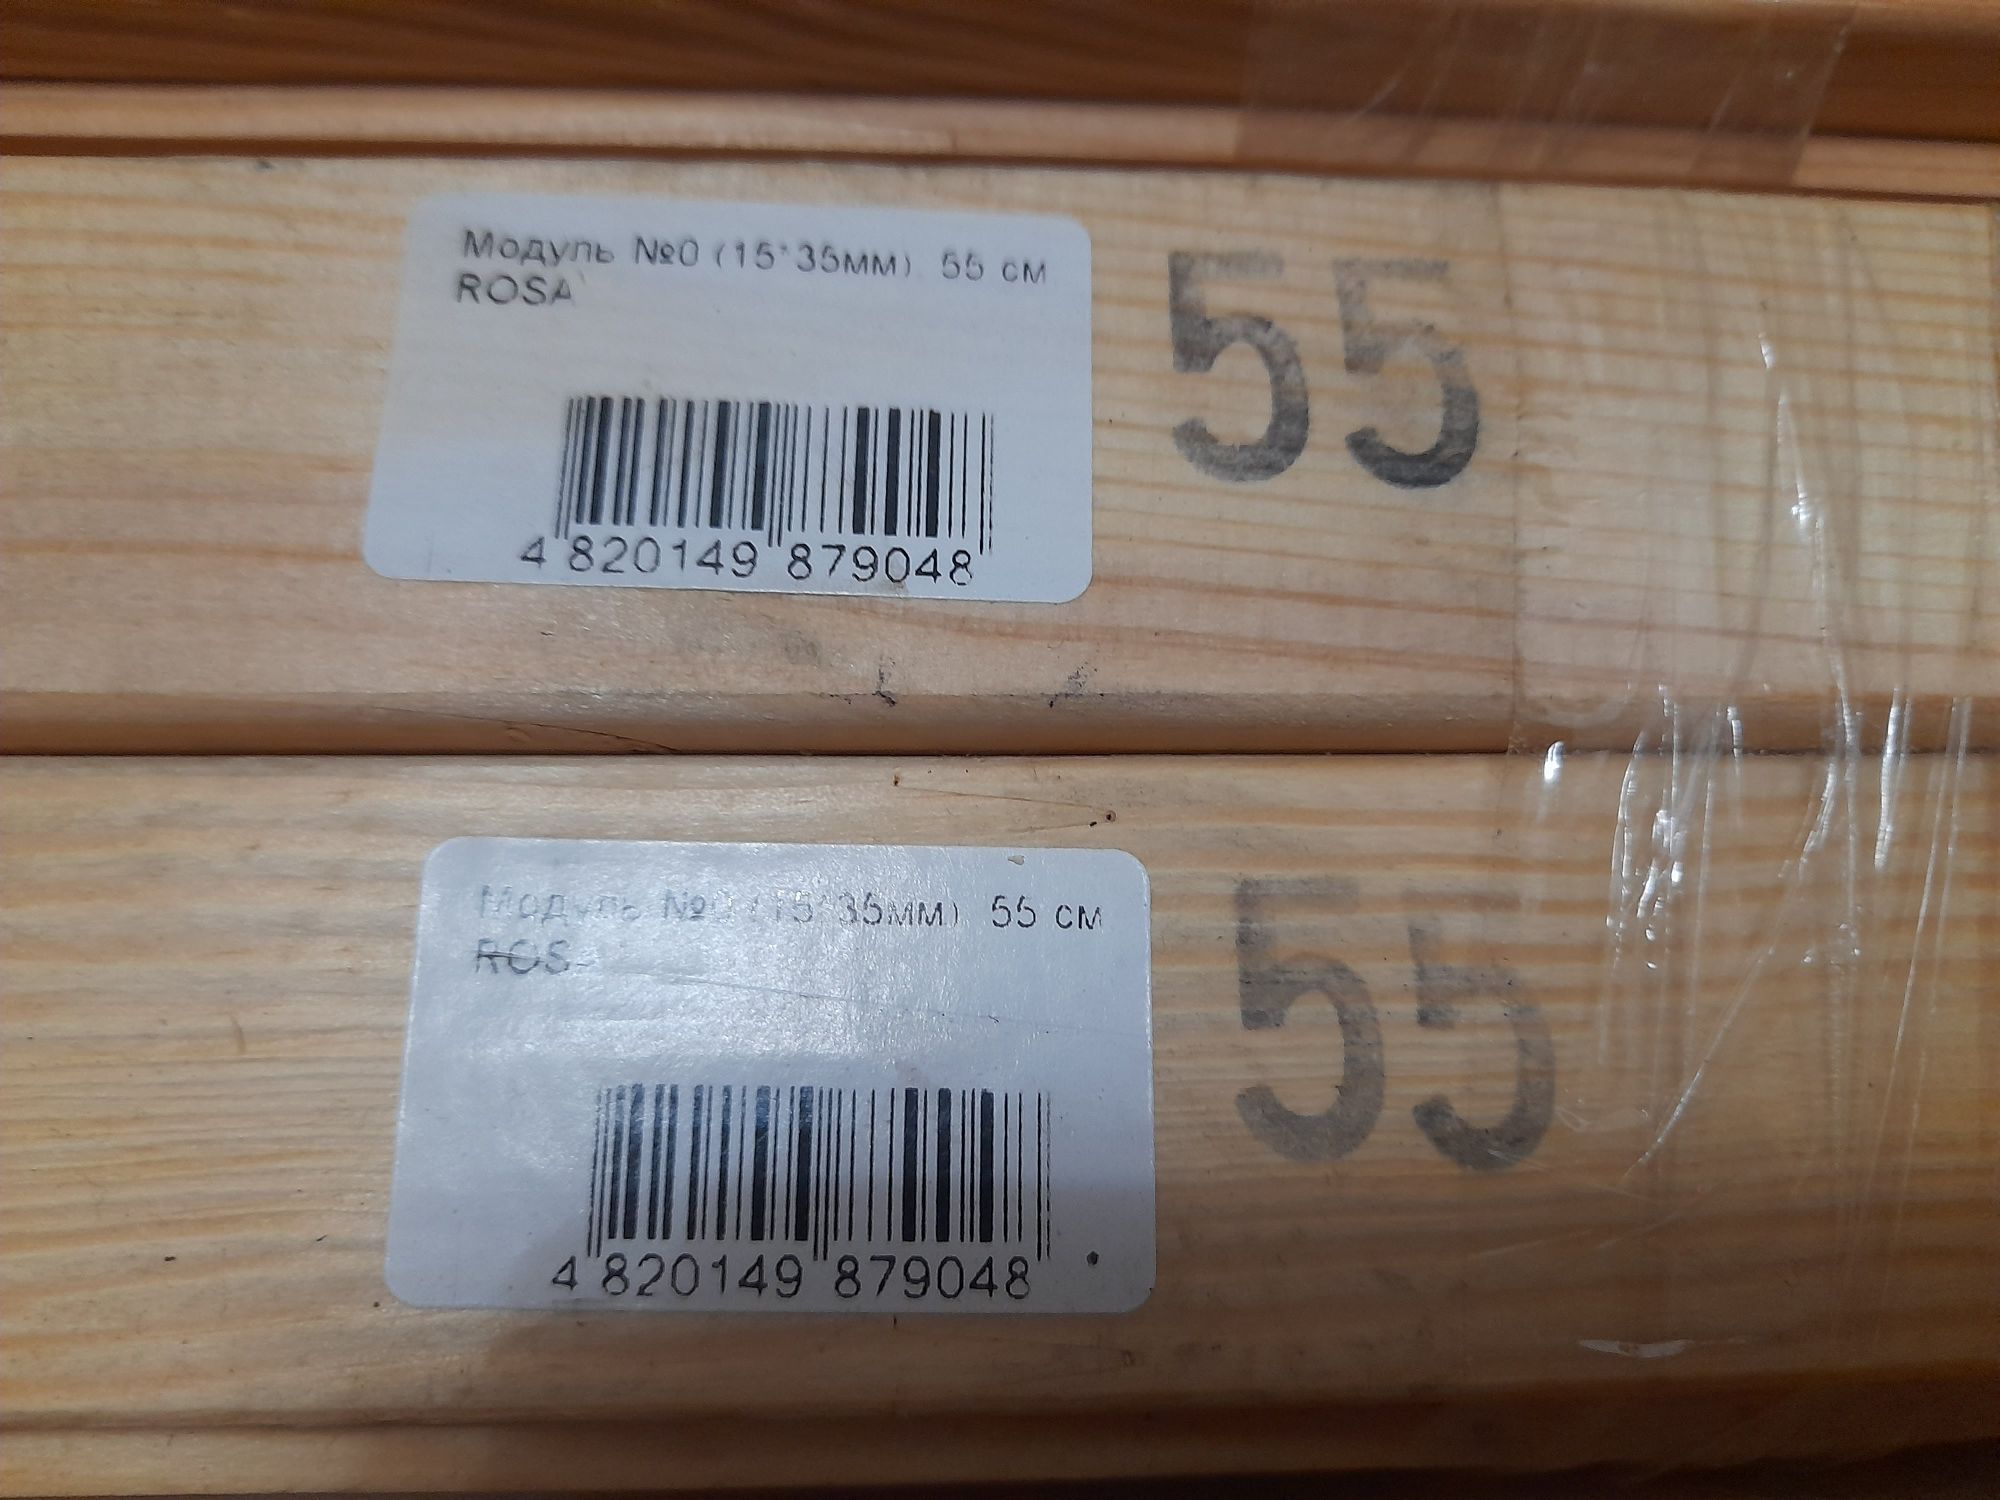 Продам деревянные рамки